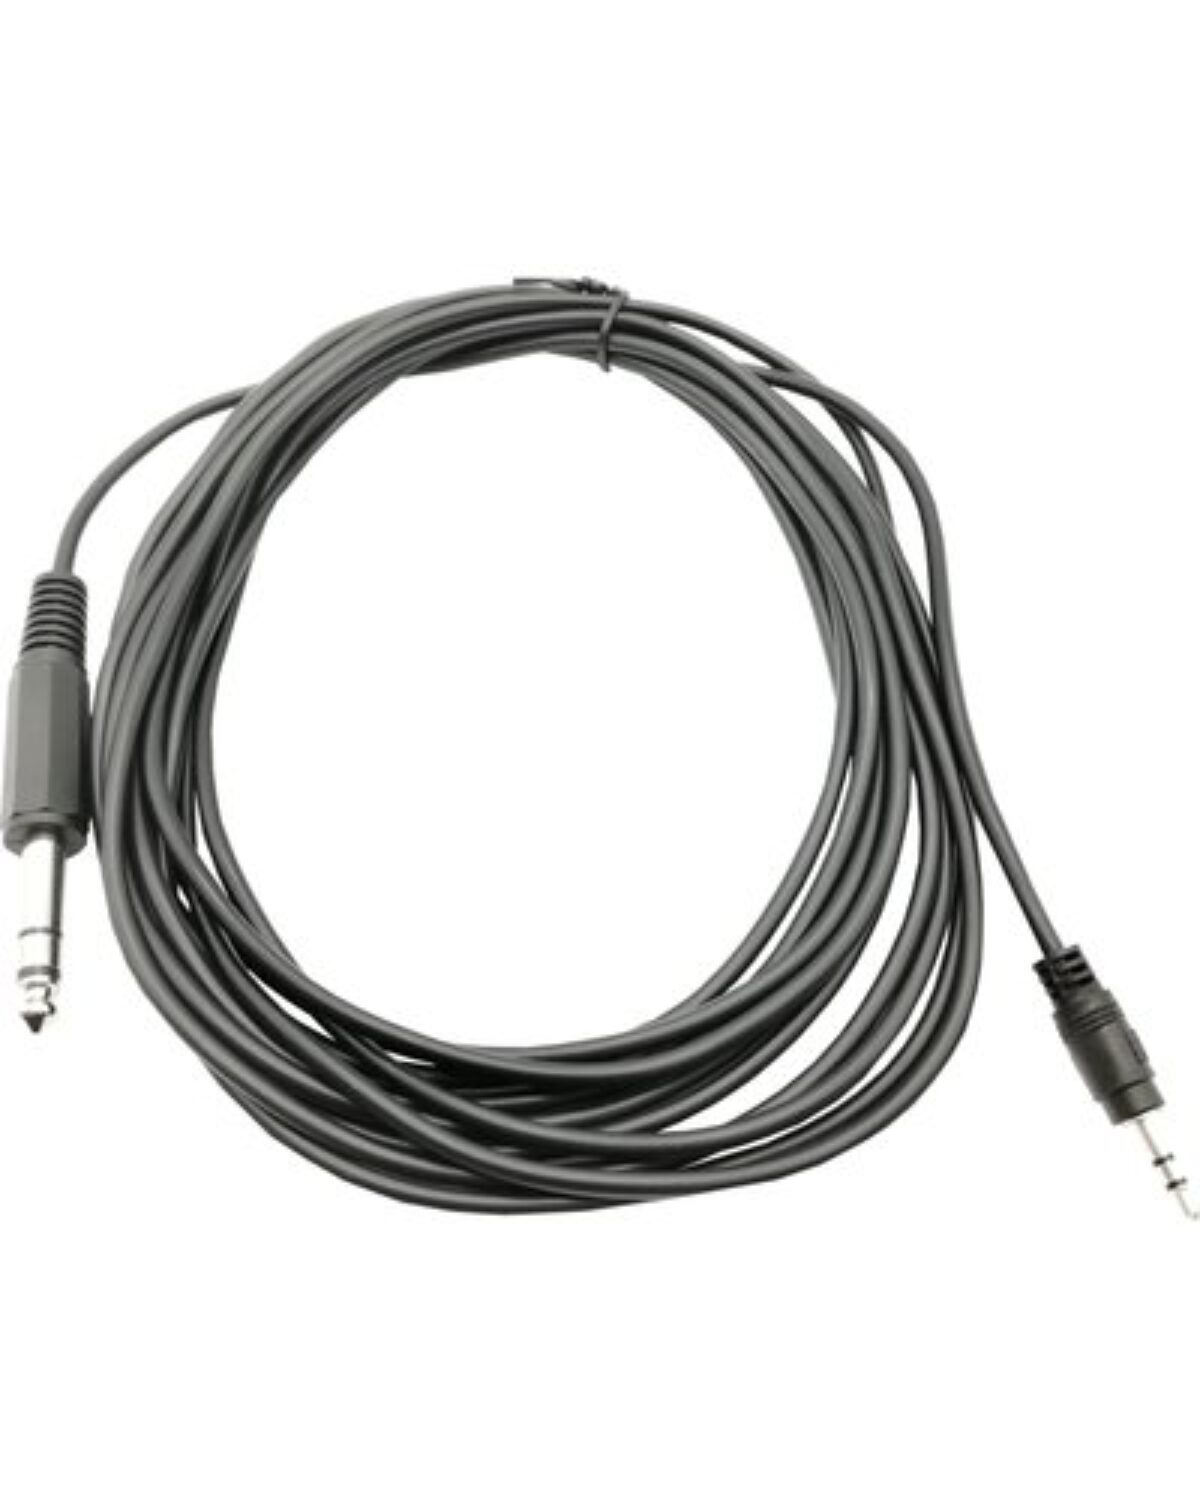 Tradineur - Cable de audio jack con doble entrada - Jack 3,5 mm - Longitud  de 13 centímetros - Ideal para compartir su música, p